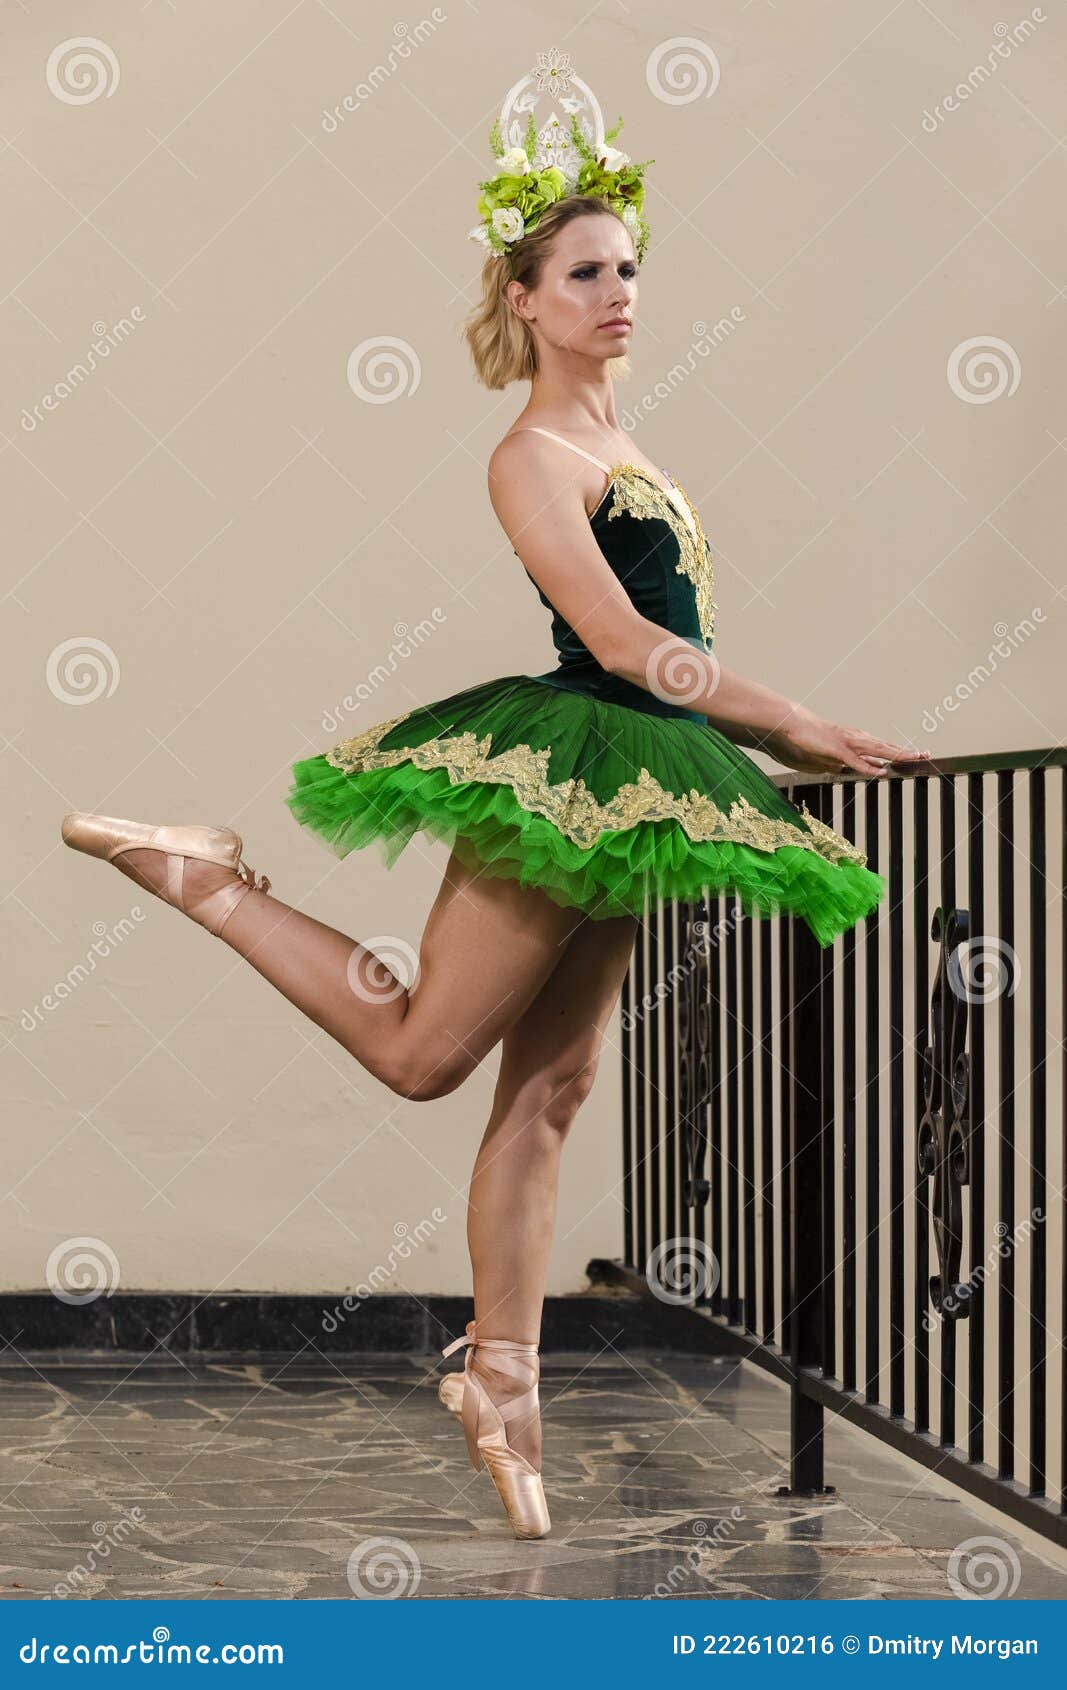 Conceptos De Coreografía. Bailarina De Ballet Caucásica Con De Tutu Verde Y Corona De Flores Posando En Una Pose Foto de archivo - Imagen de contraste, calle: 222610216